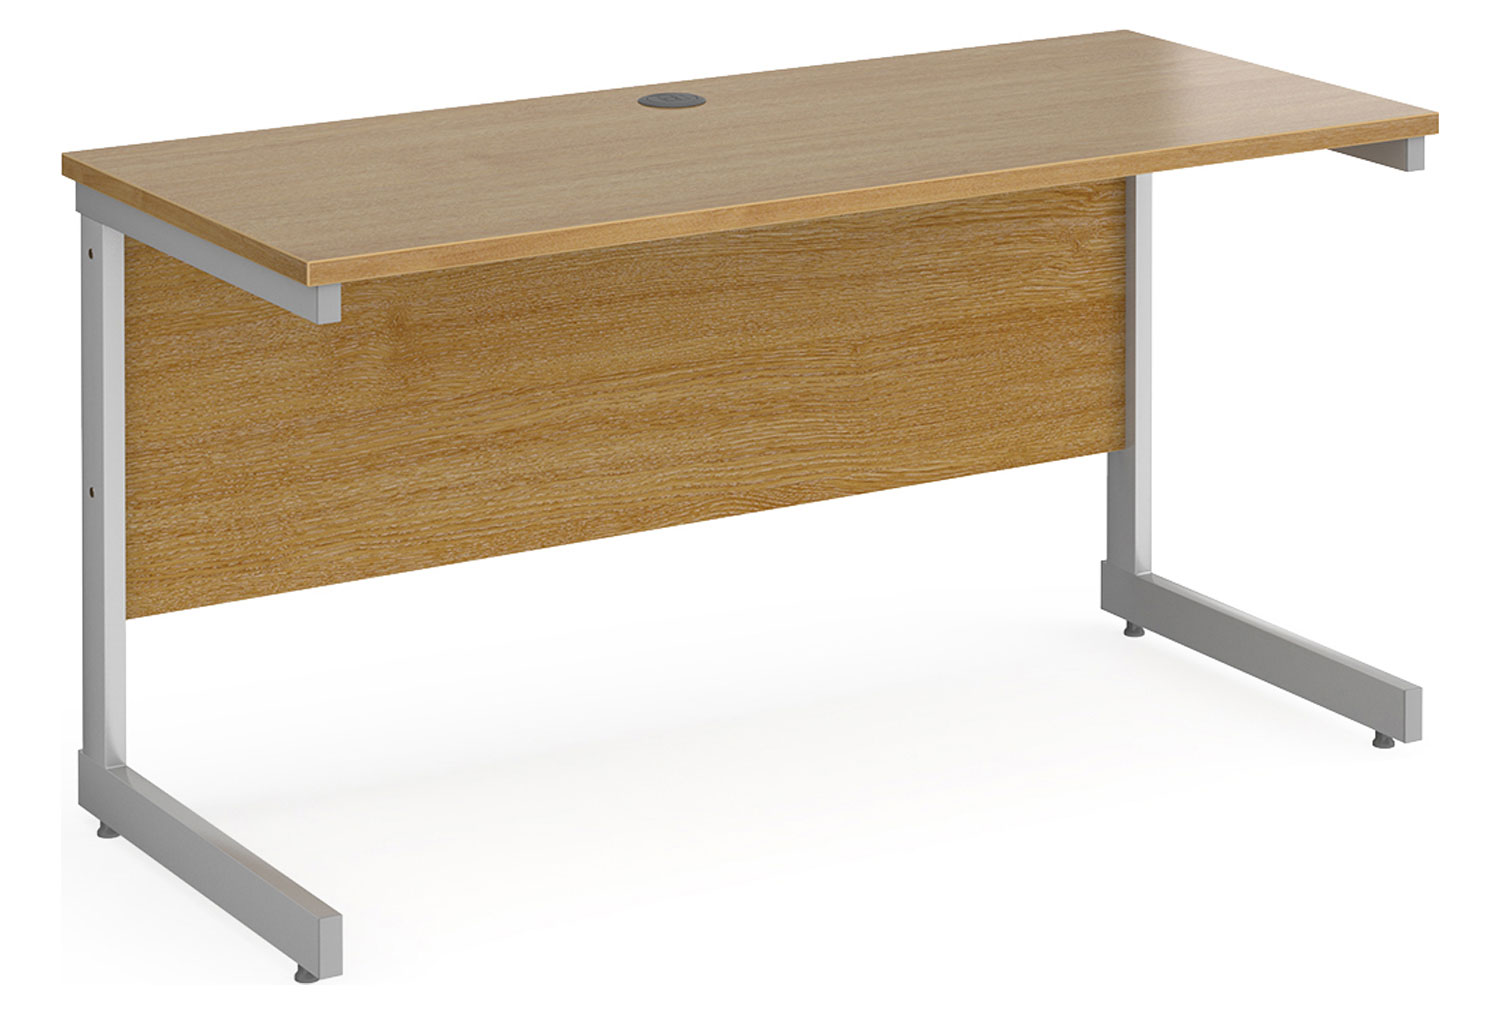 Tully I Narrow Rectangular Office Desk, 140wx60dx73h (cm), Oak, Fully Installed